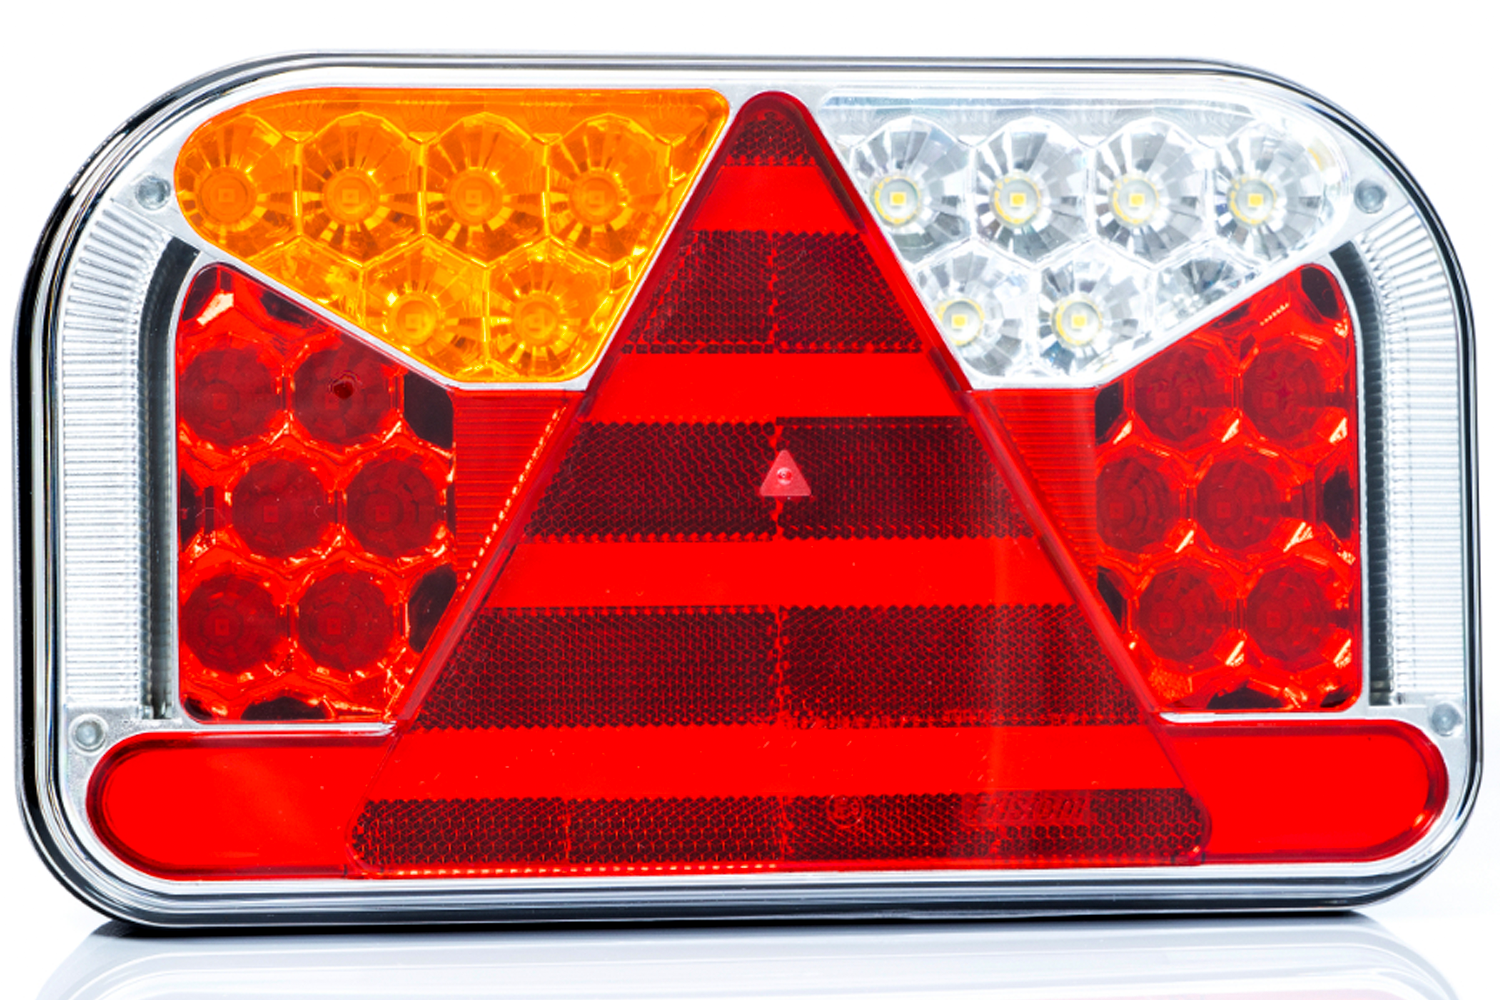 Links, LED Rückleuchte, Dreieck Model l 12v